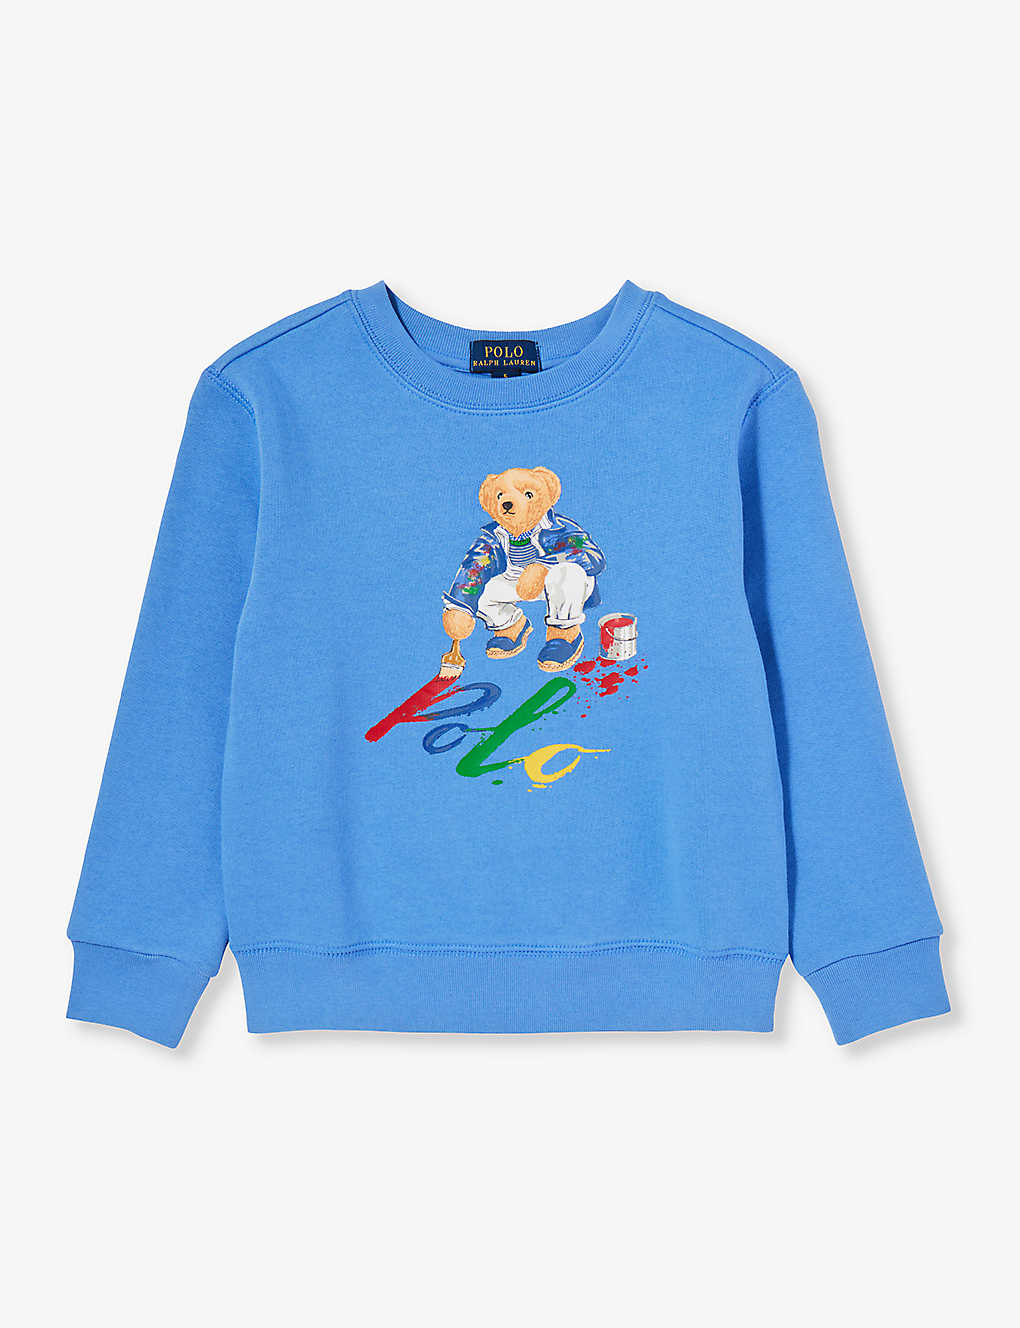 Polo Ralph Lauren Boys Blue Kids Brand-print Cotton-blend Sweatshirt 3-24 Months